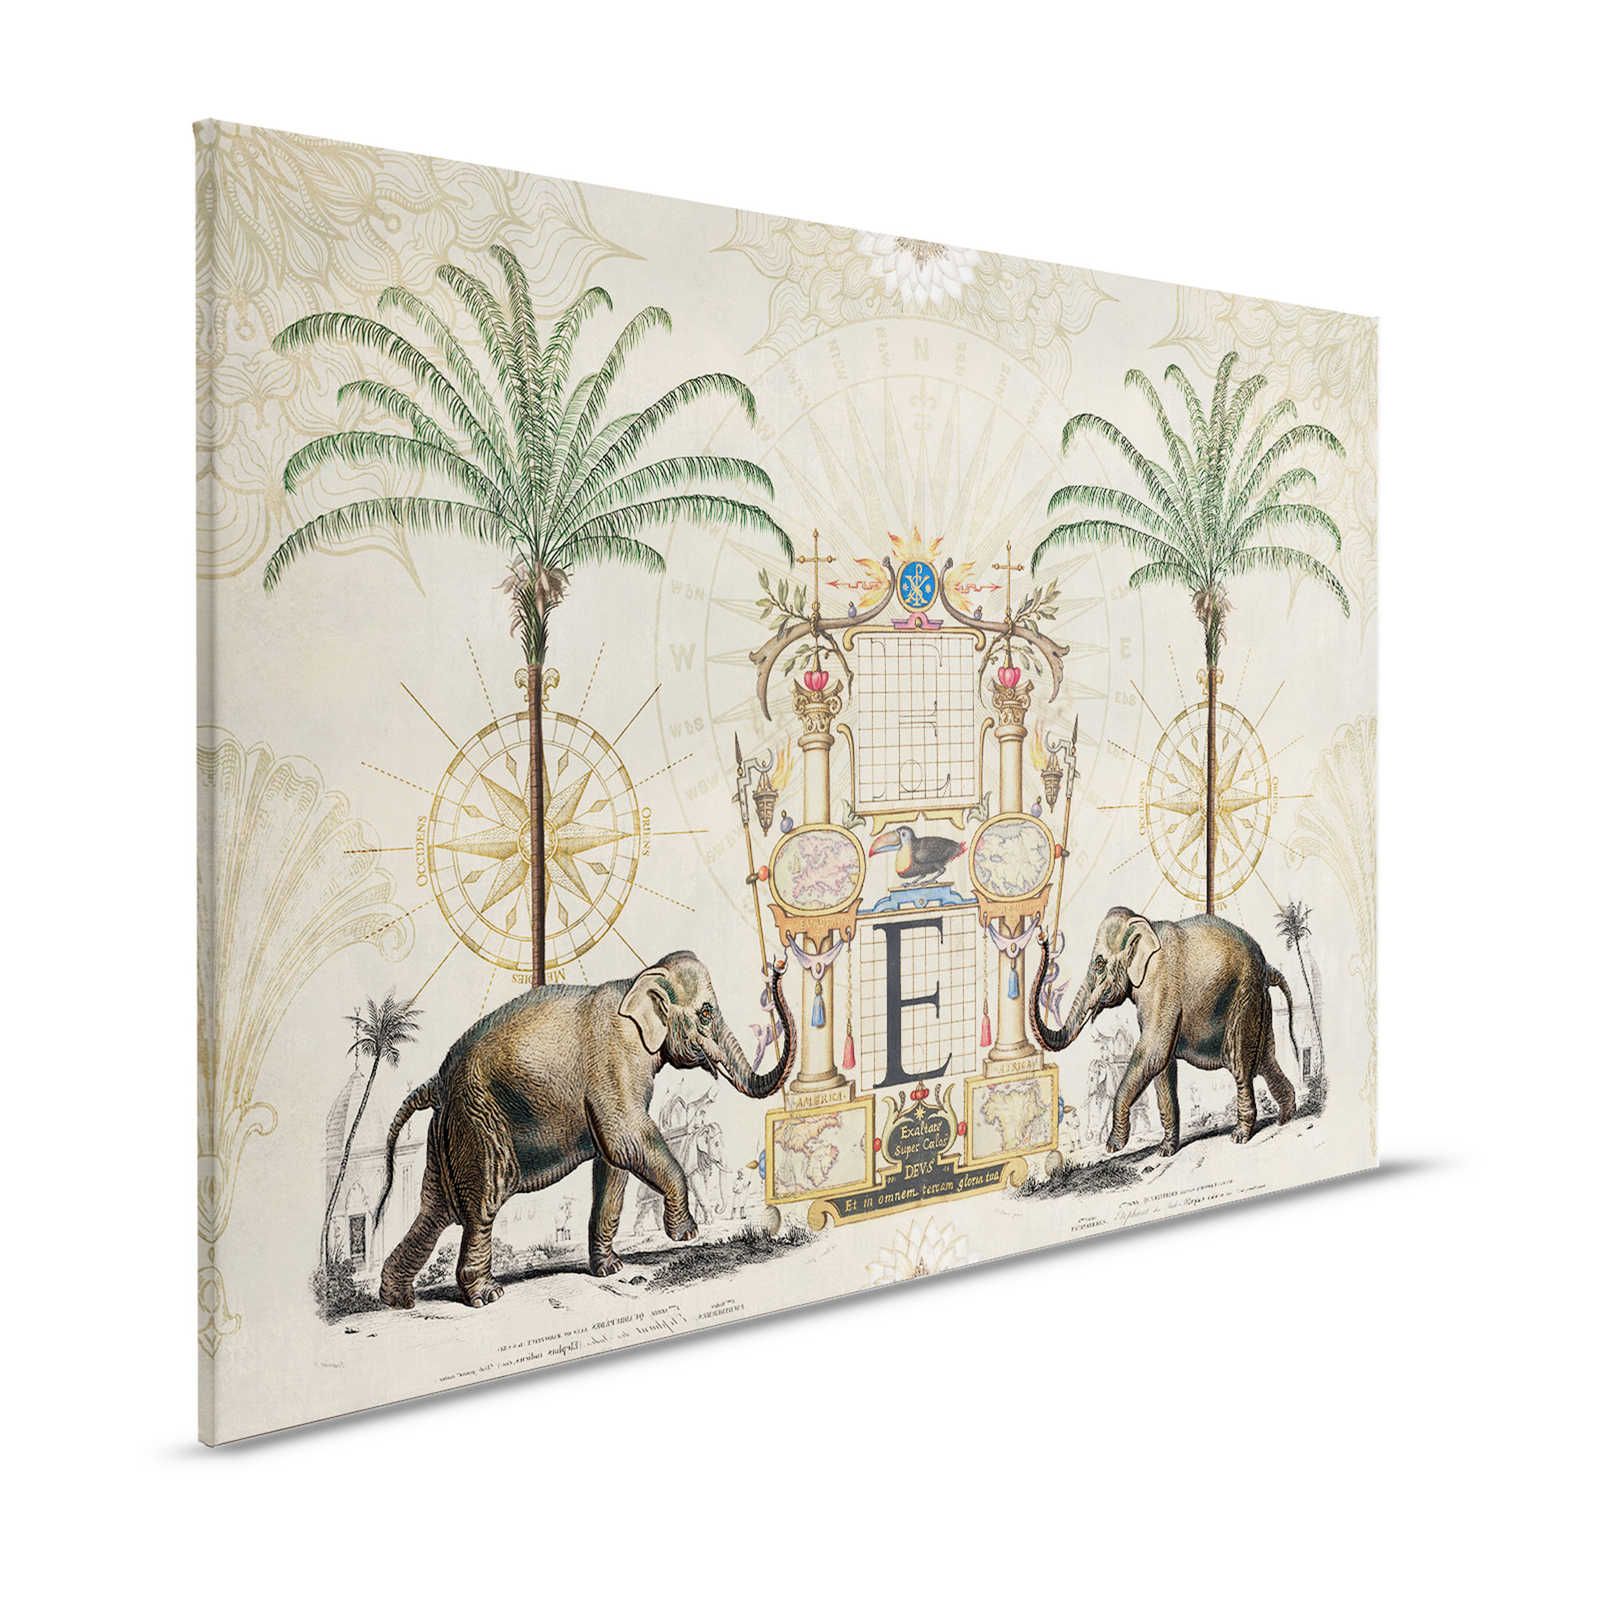 Toile nostalgique avec motif d'éléphant vintage - 1,20 m x 0,80 m
